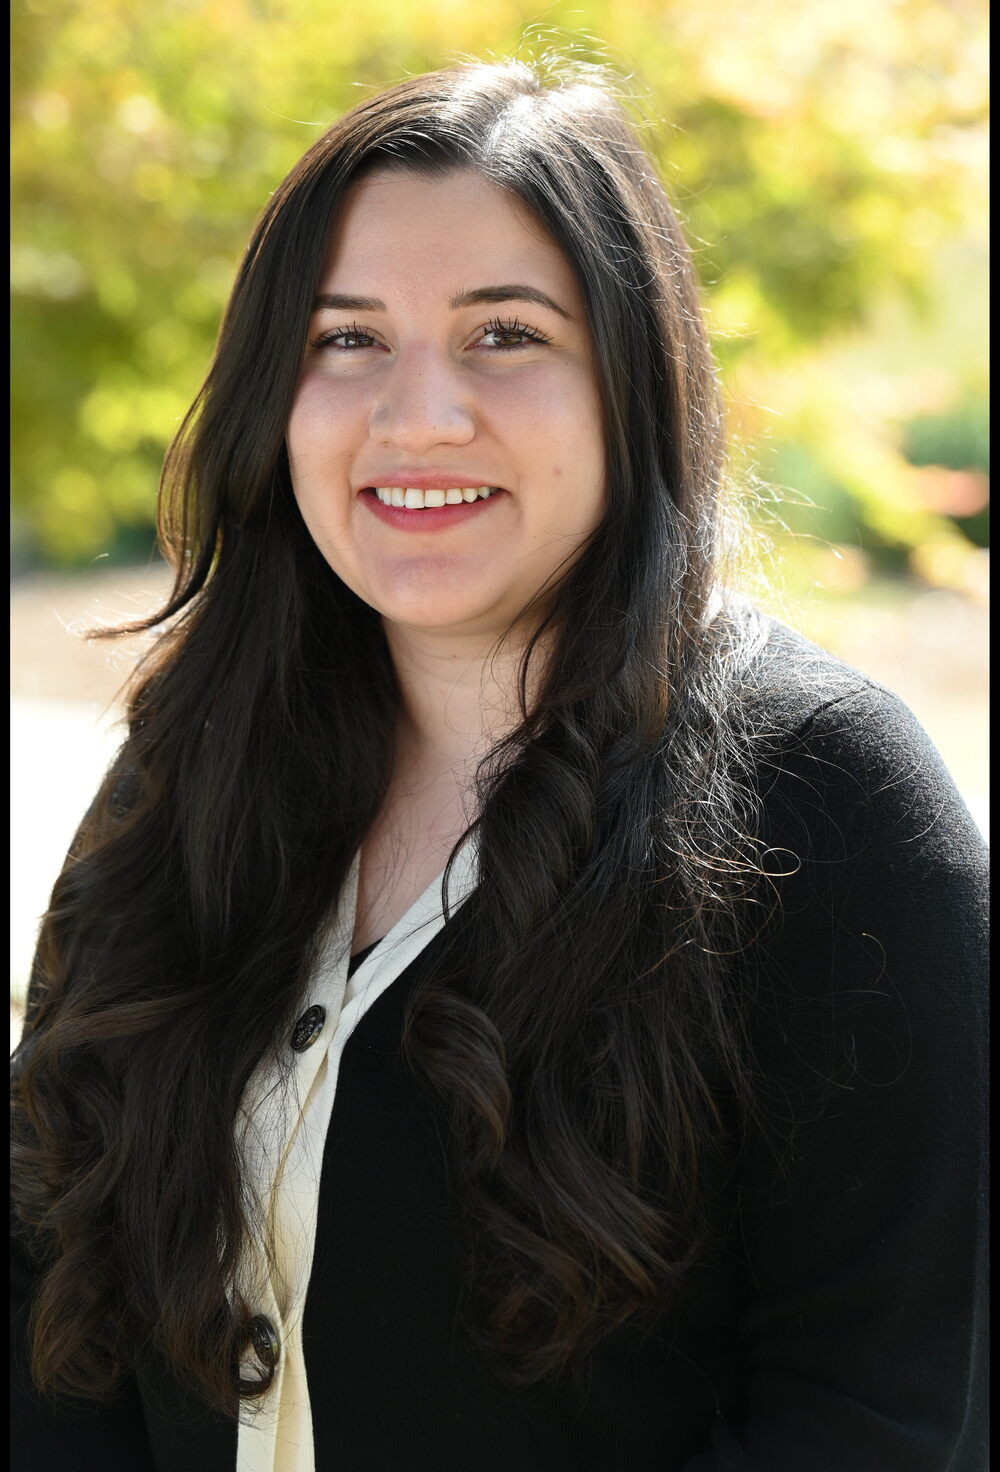 Headshot image of graduate student Samantha Dominguez Zarate